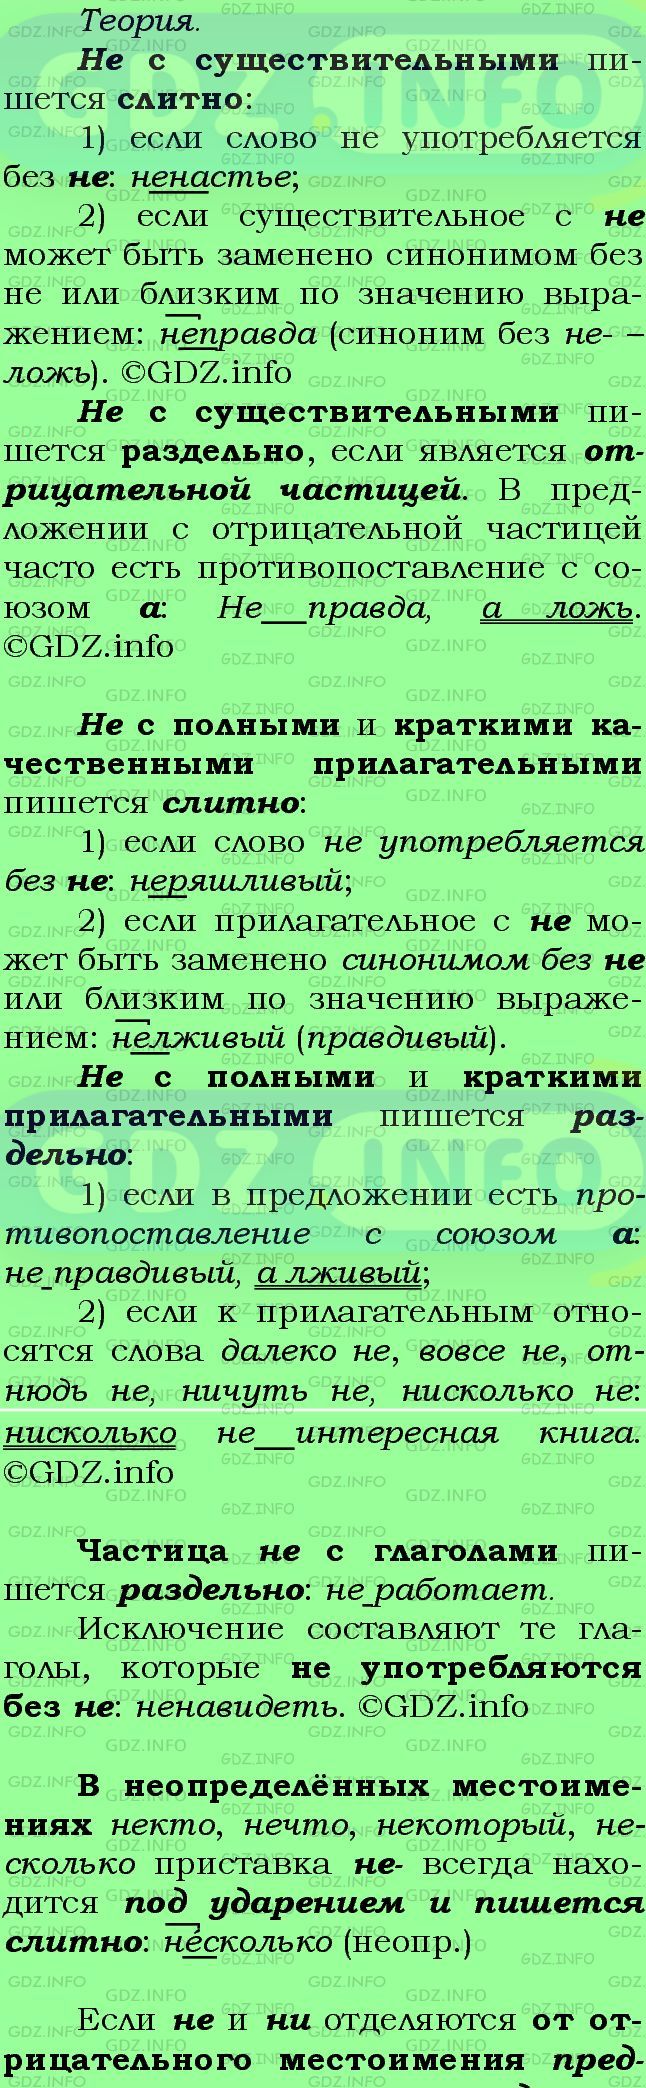 Фото подробного решения: Номер №159 из ГДЗ по Русскому языку 7 класс: Ладыженская Т.А.